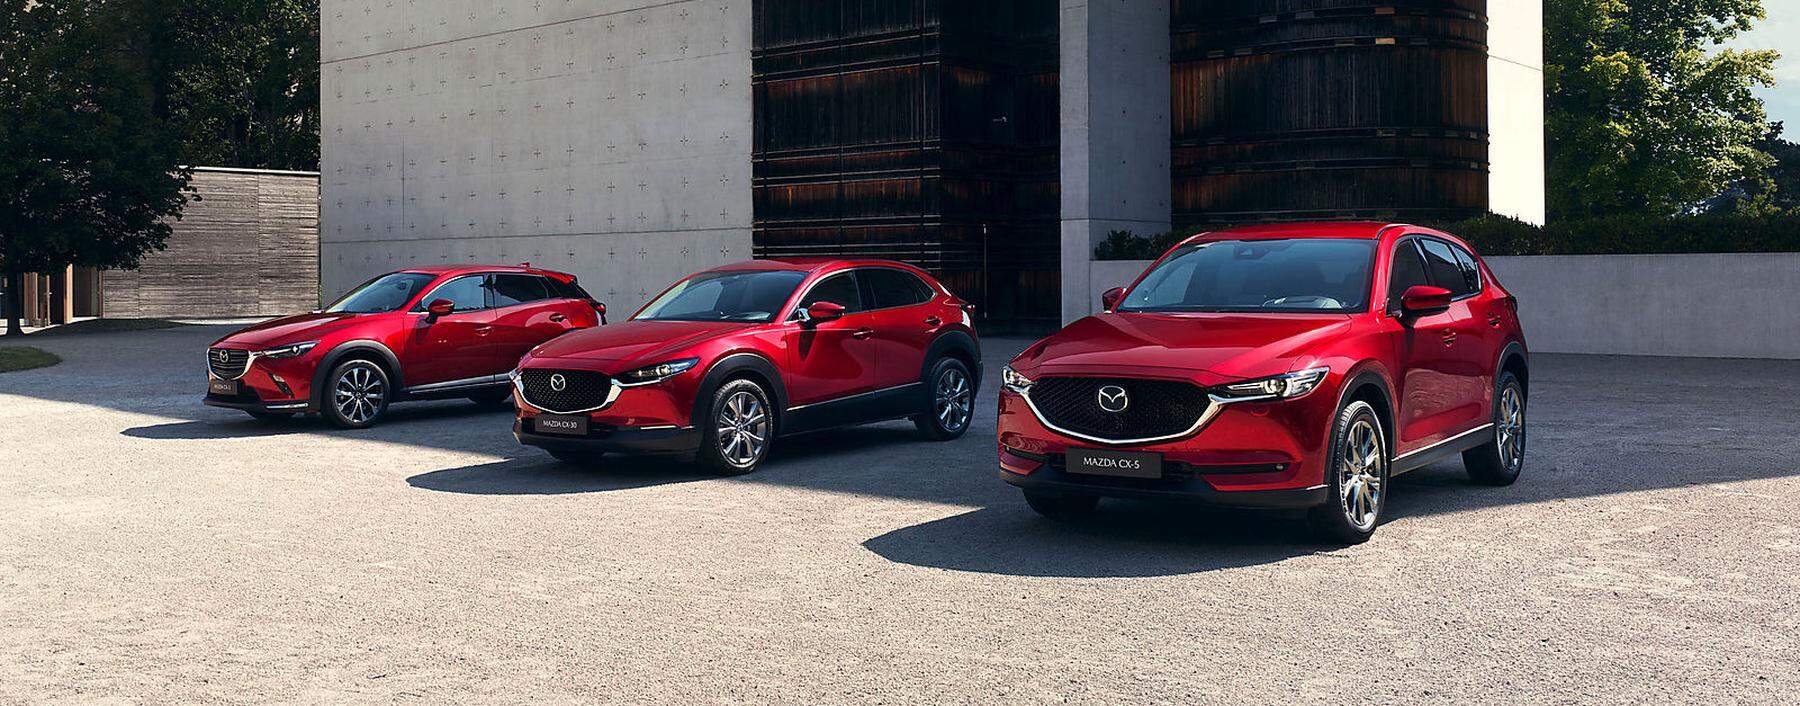 Mazda ist anders und bleibt sich darin treu.